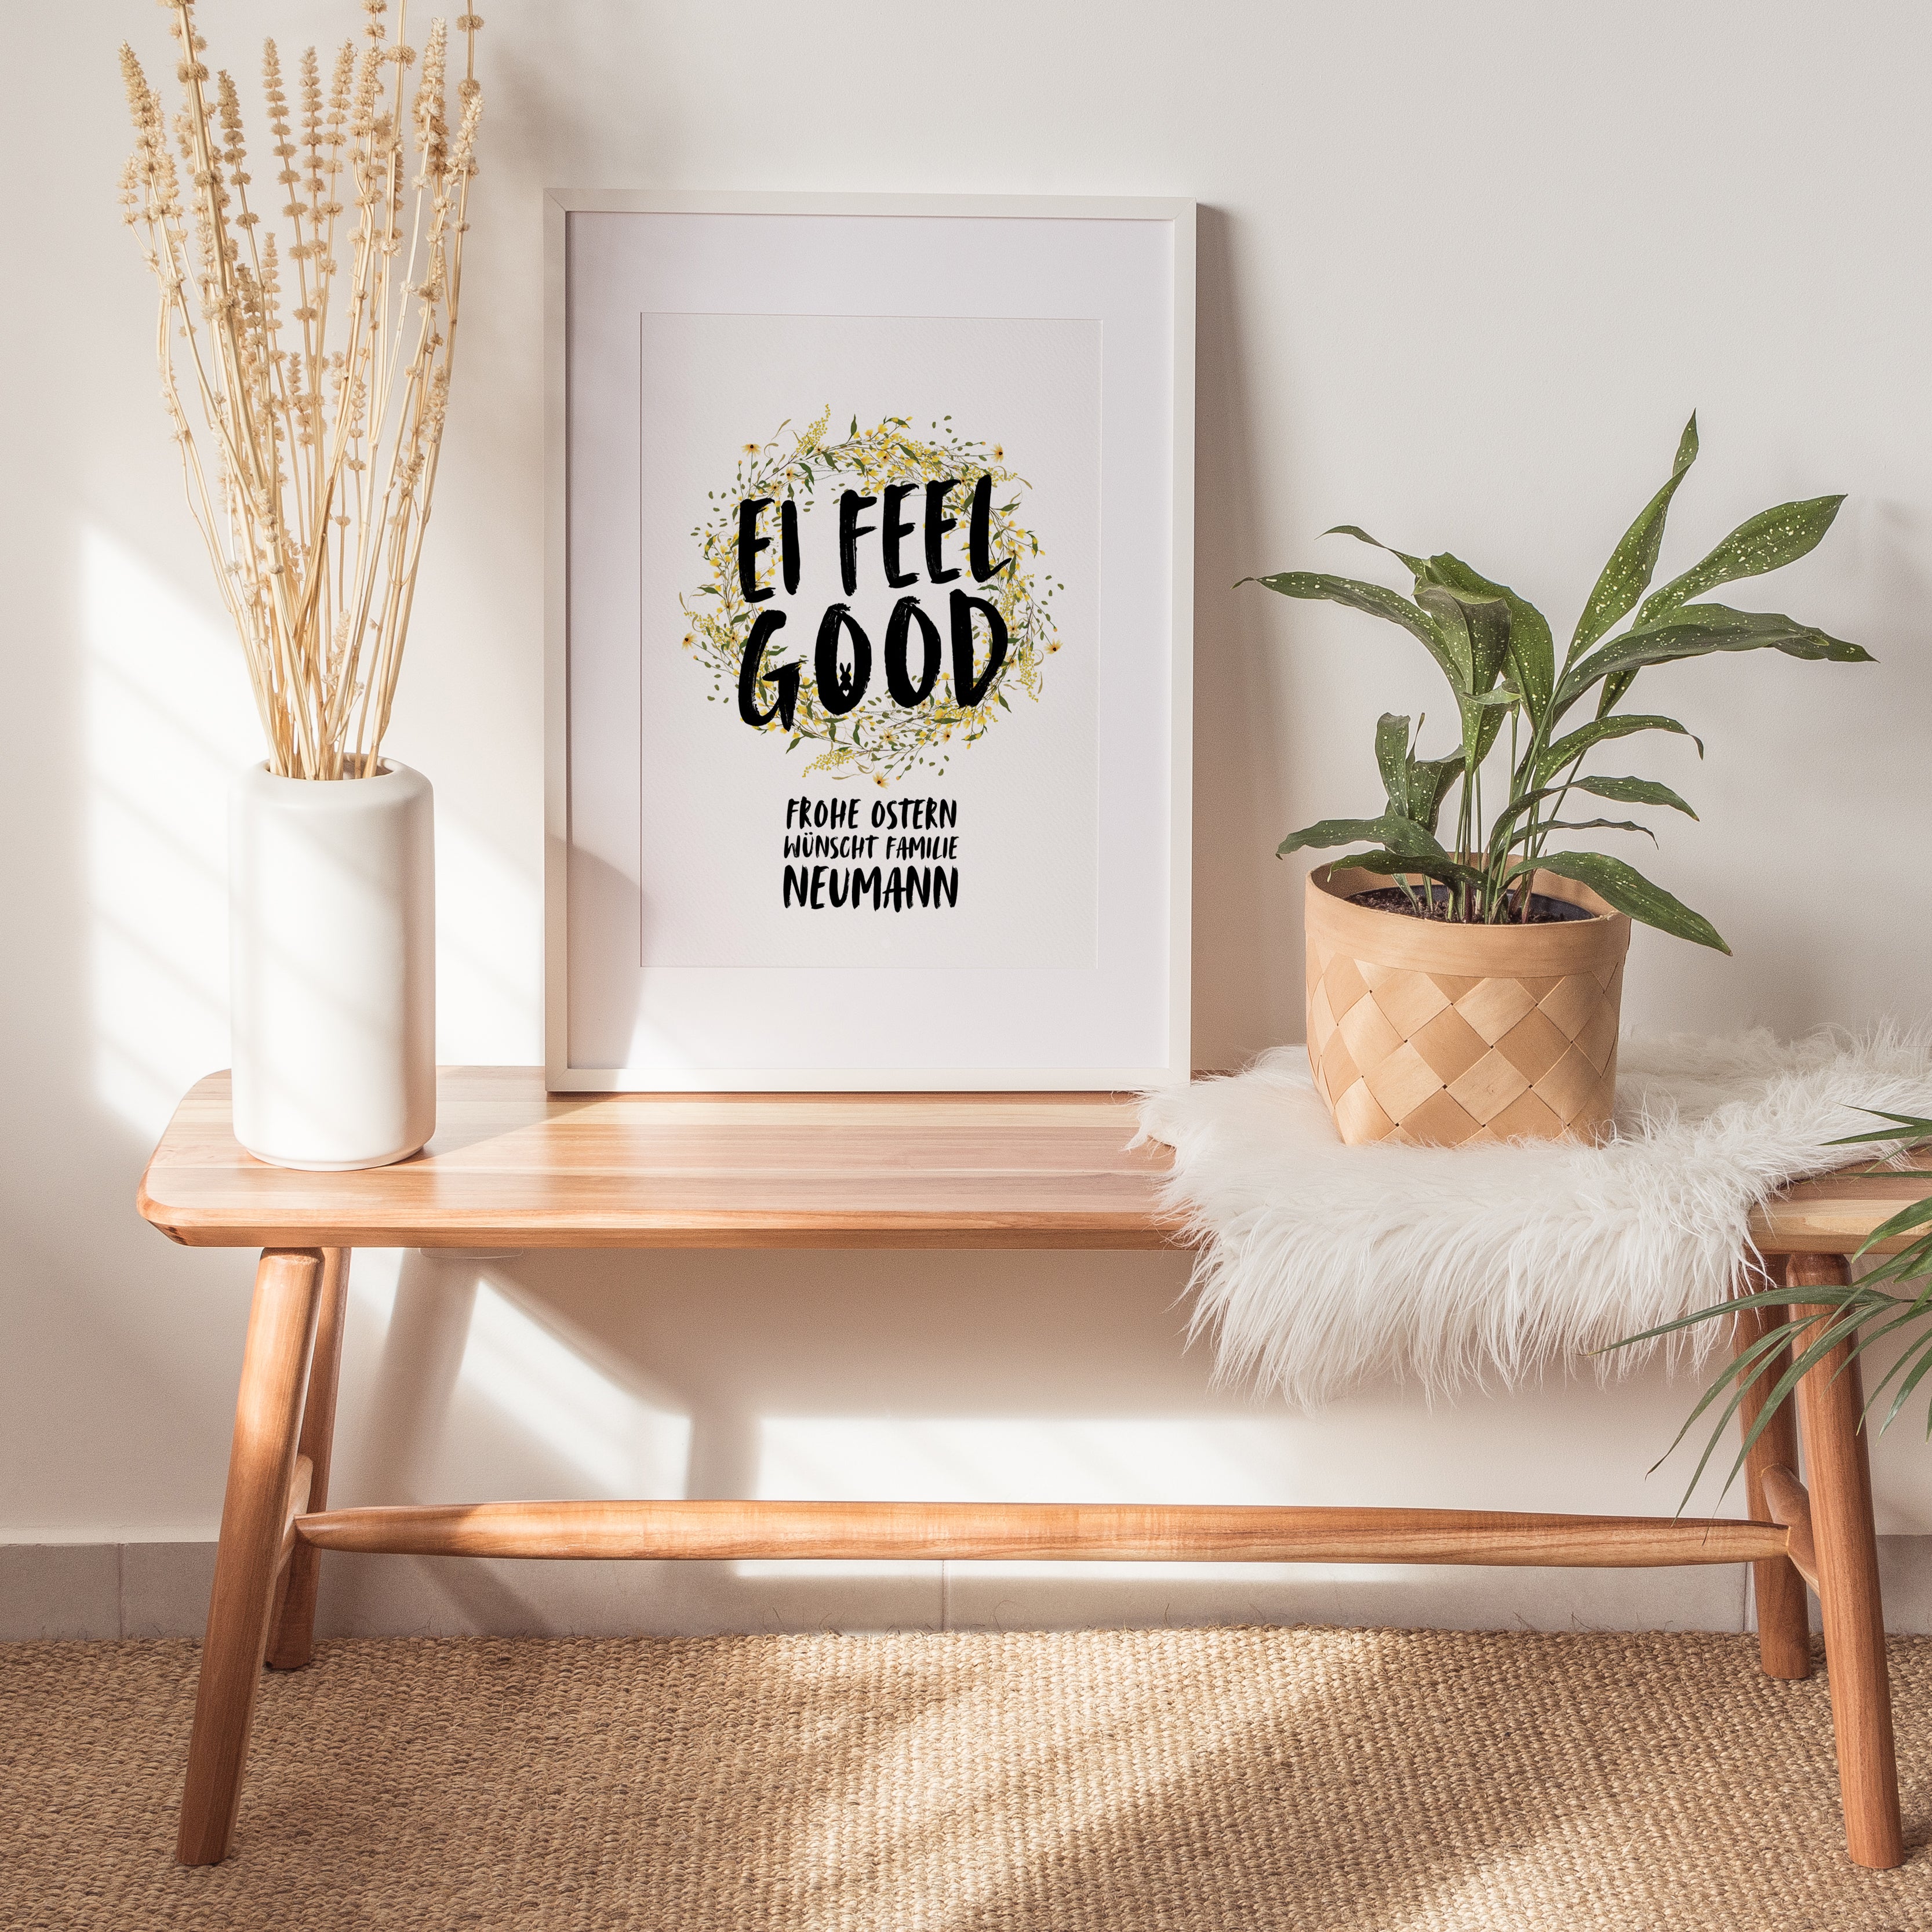 EI FEEL GOOD - Poster